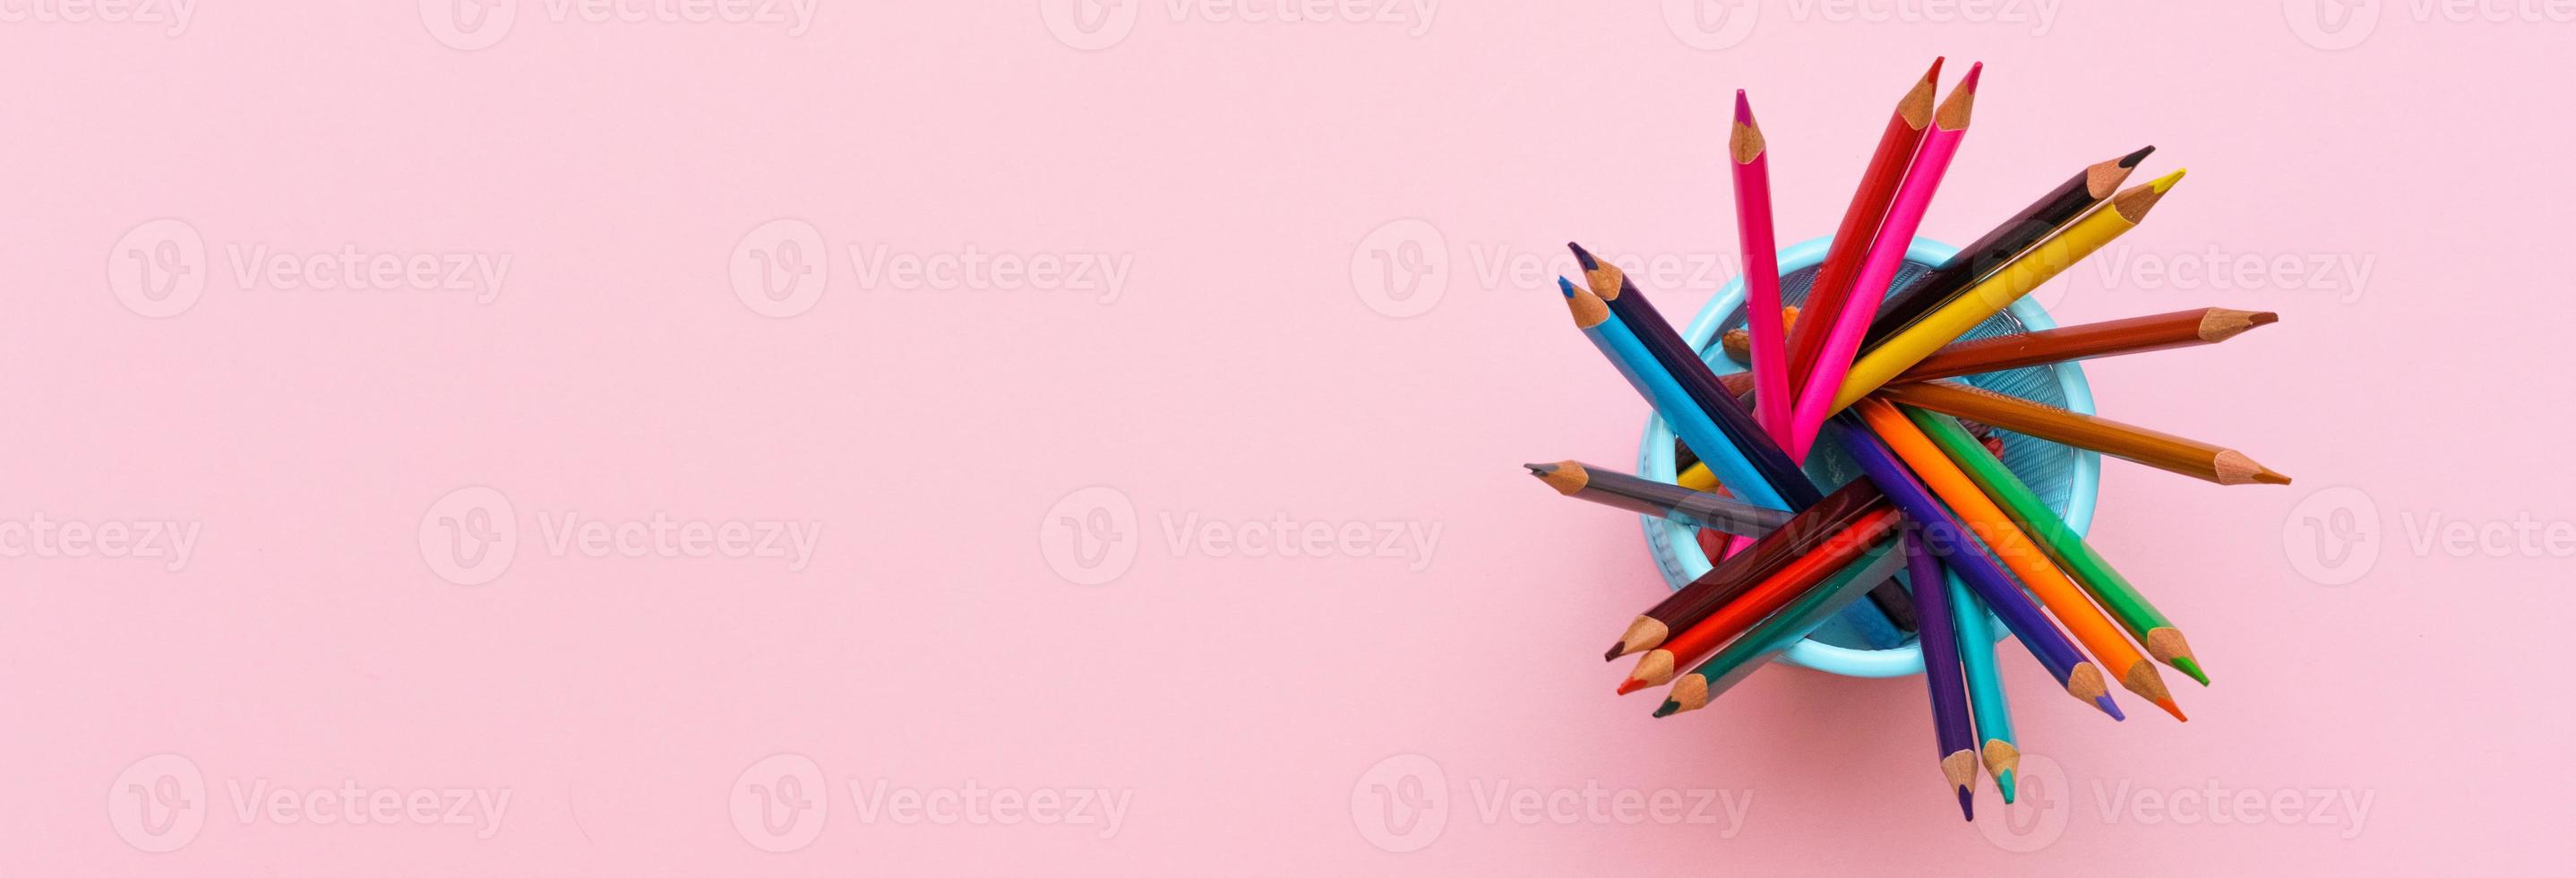 colorato di legno matite su rosa sfondo, formazione scolastica concetto. foto